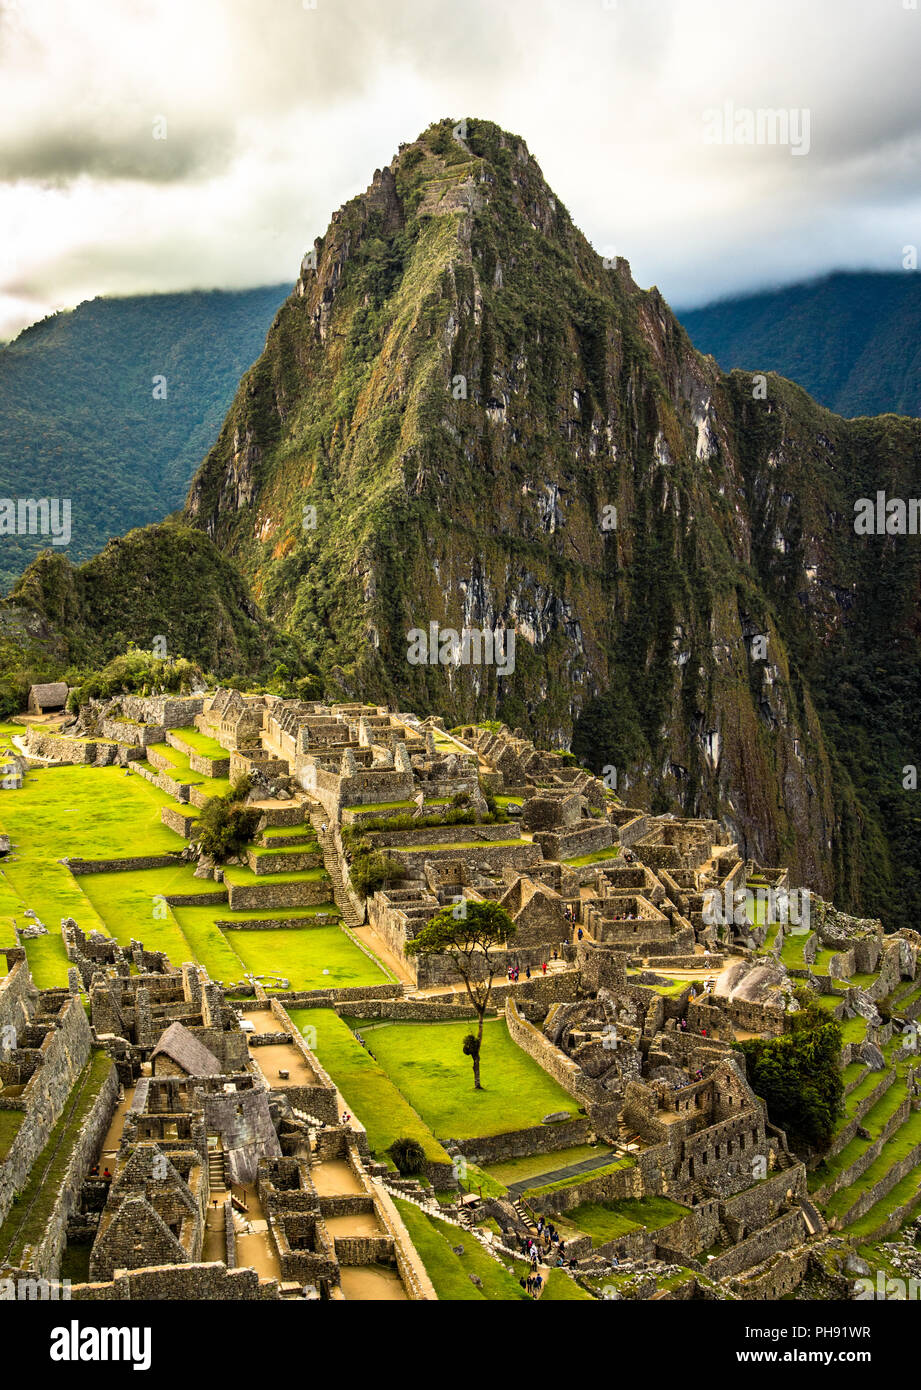 Machu Picchu sanctuaire avec la montagne Huayna Picchu derrière elle. Vue depuis l'agriculture Inca/terrasses de jardin. Machu Picchu, au Pérou. Banque D'Images